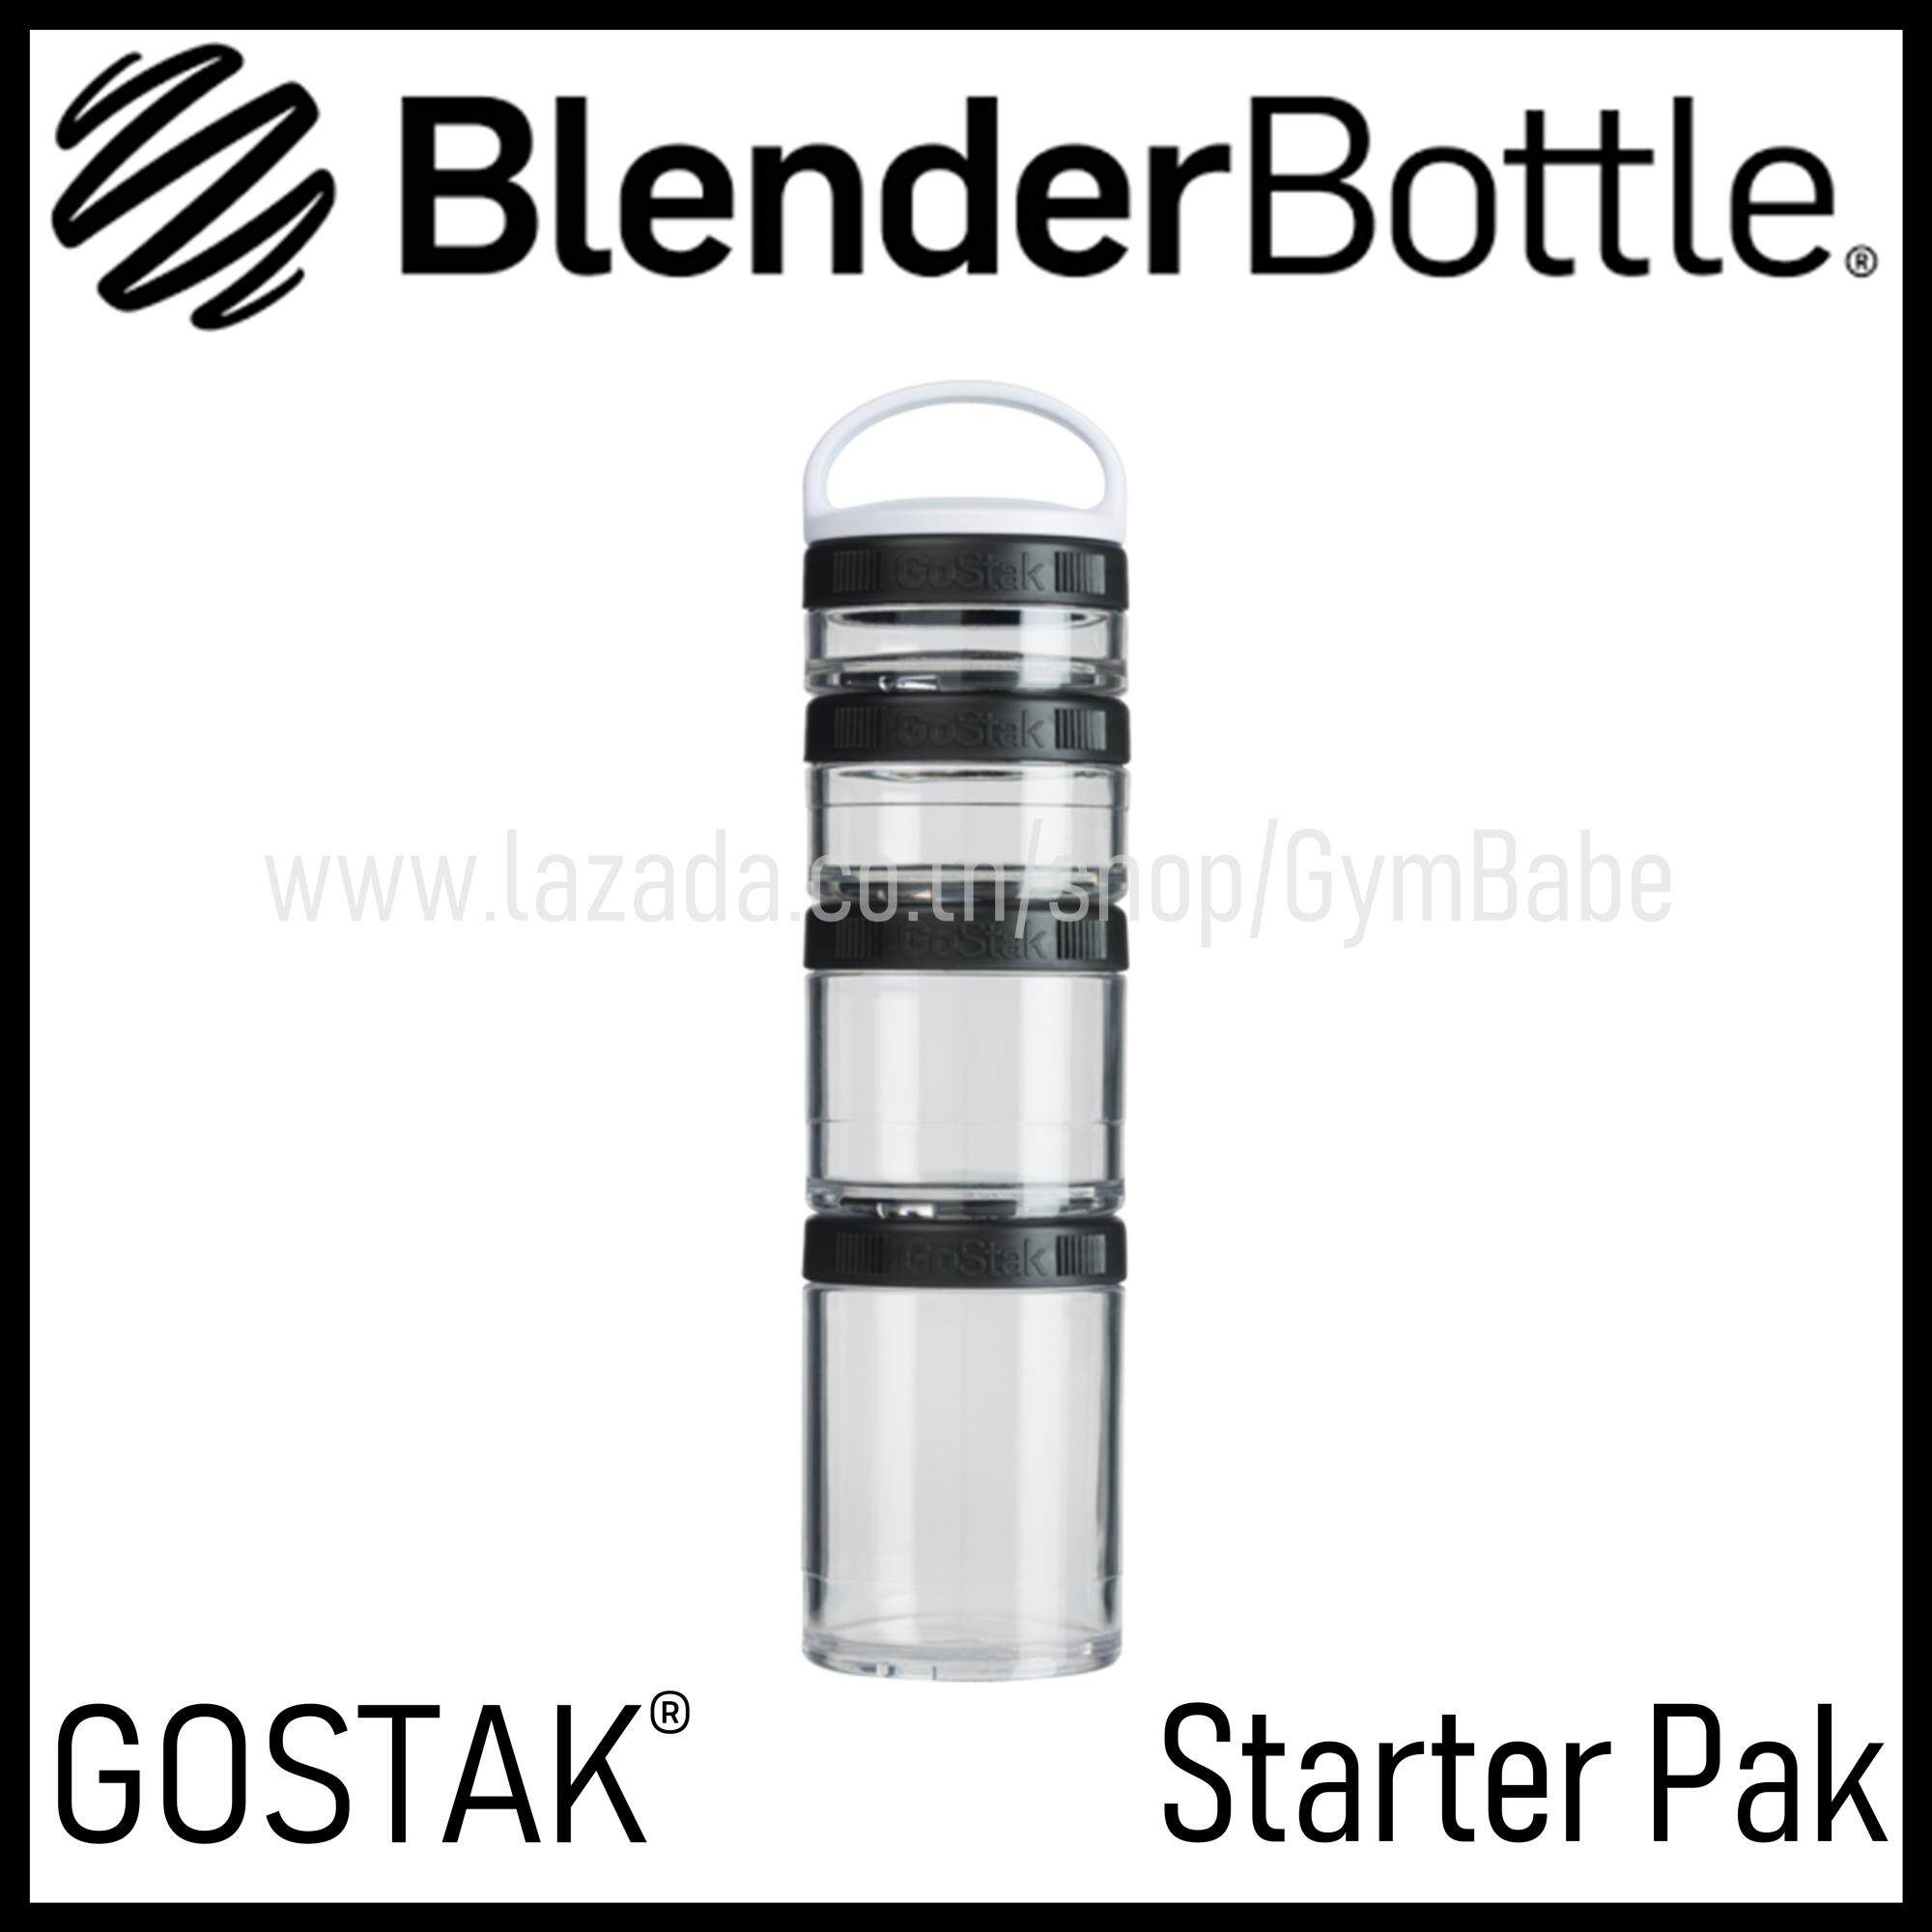 BlenderBottle GoStak Twist n' Lock Storage Jars, 4-Piece Starter